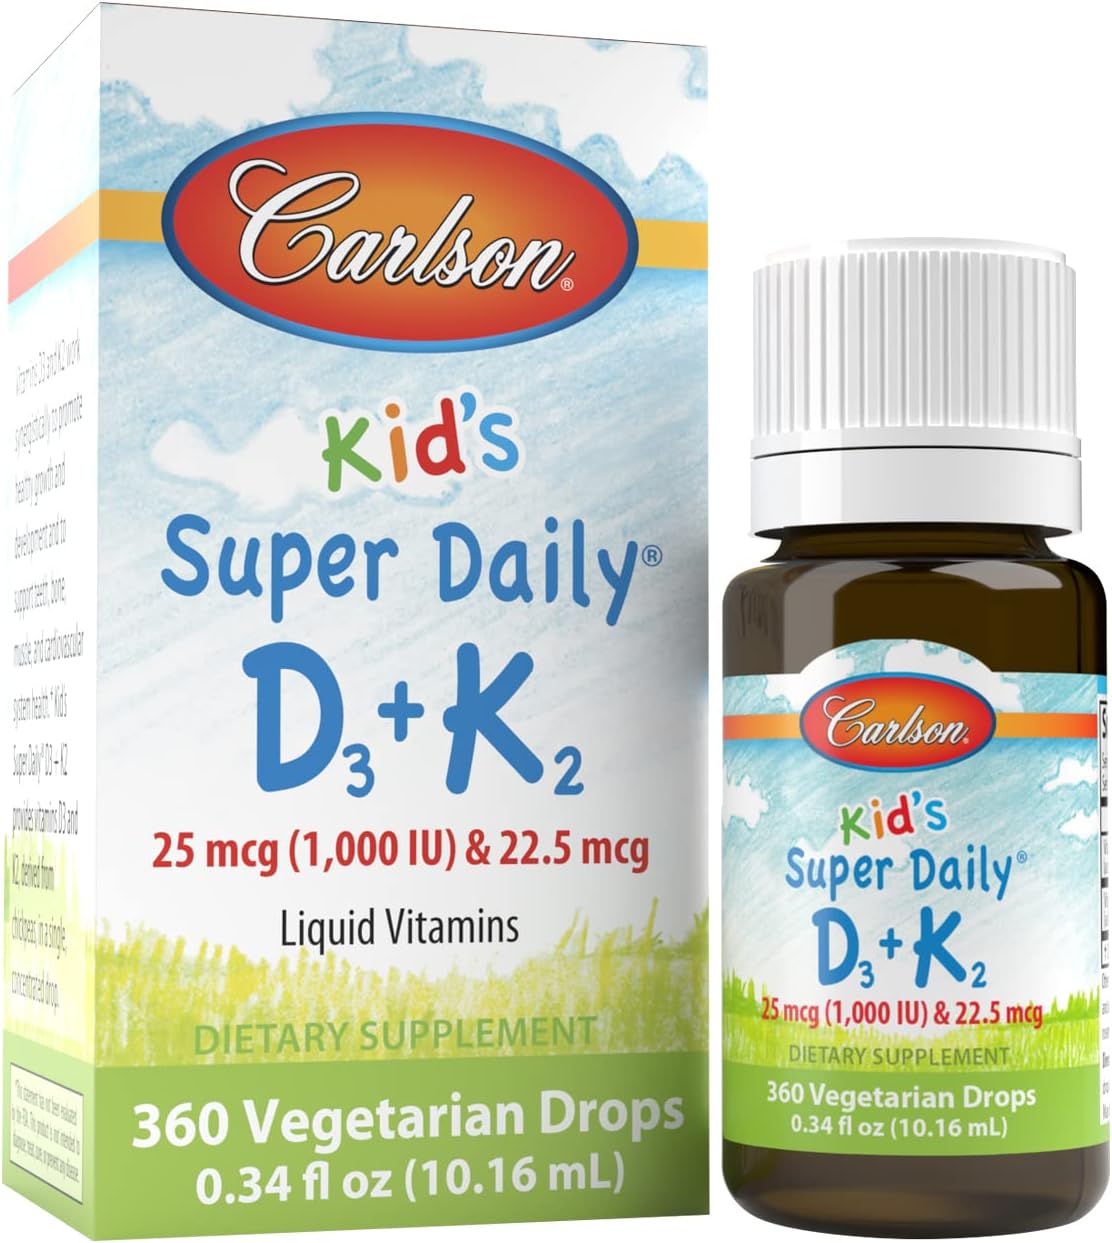 Carlson - Kid's Super Daily D3+K2, 25 mcg (1,000 IU) D3 & 22.5 mcg K2, Vitamin D Drops with Vitamin K2, Liquid Vitamins, 1000 IU Vitamin D3, Heart & Bone Health, 1-Year Supply, Unflavored, 360 Drops